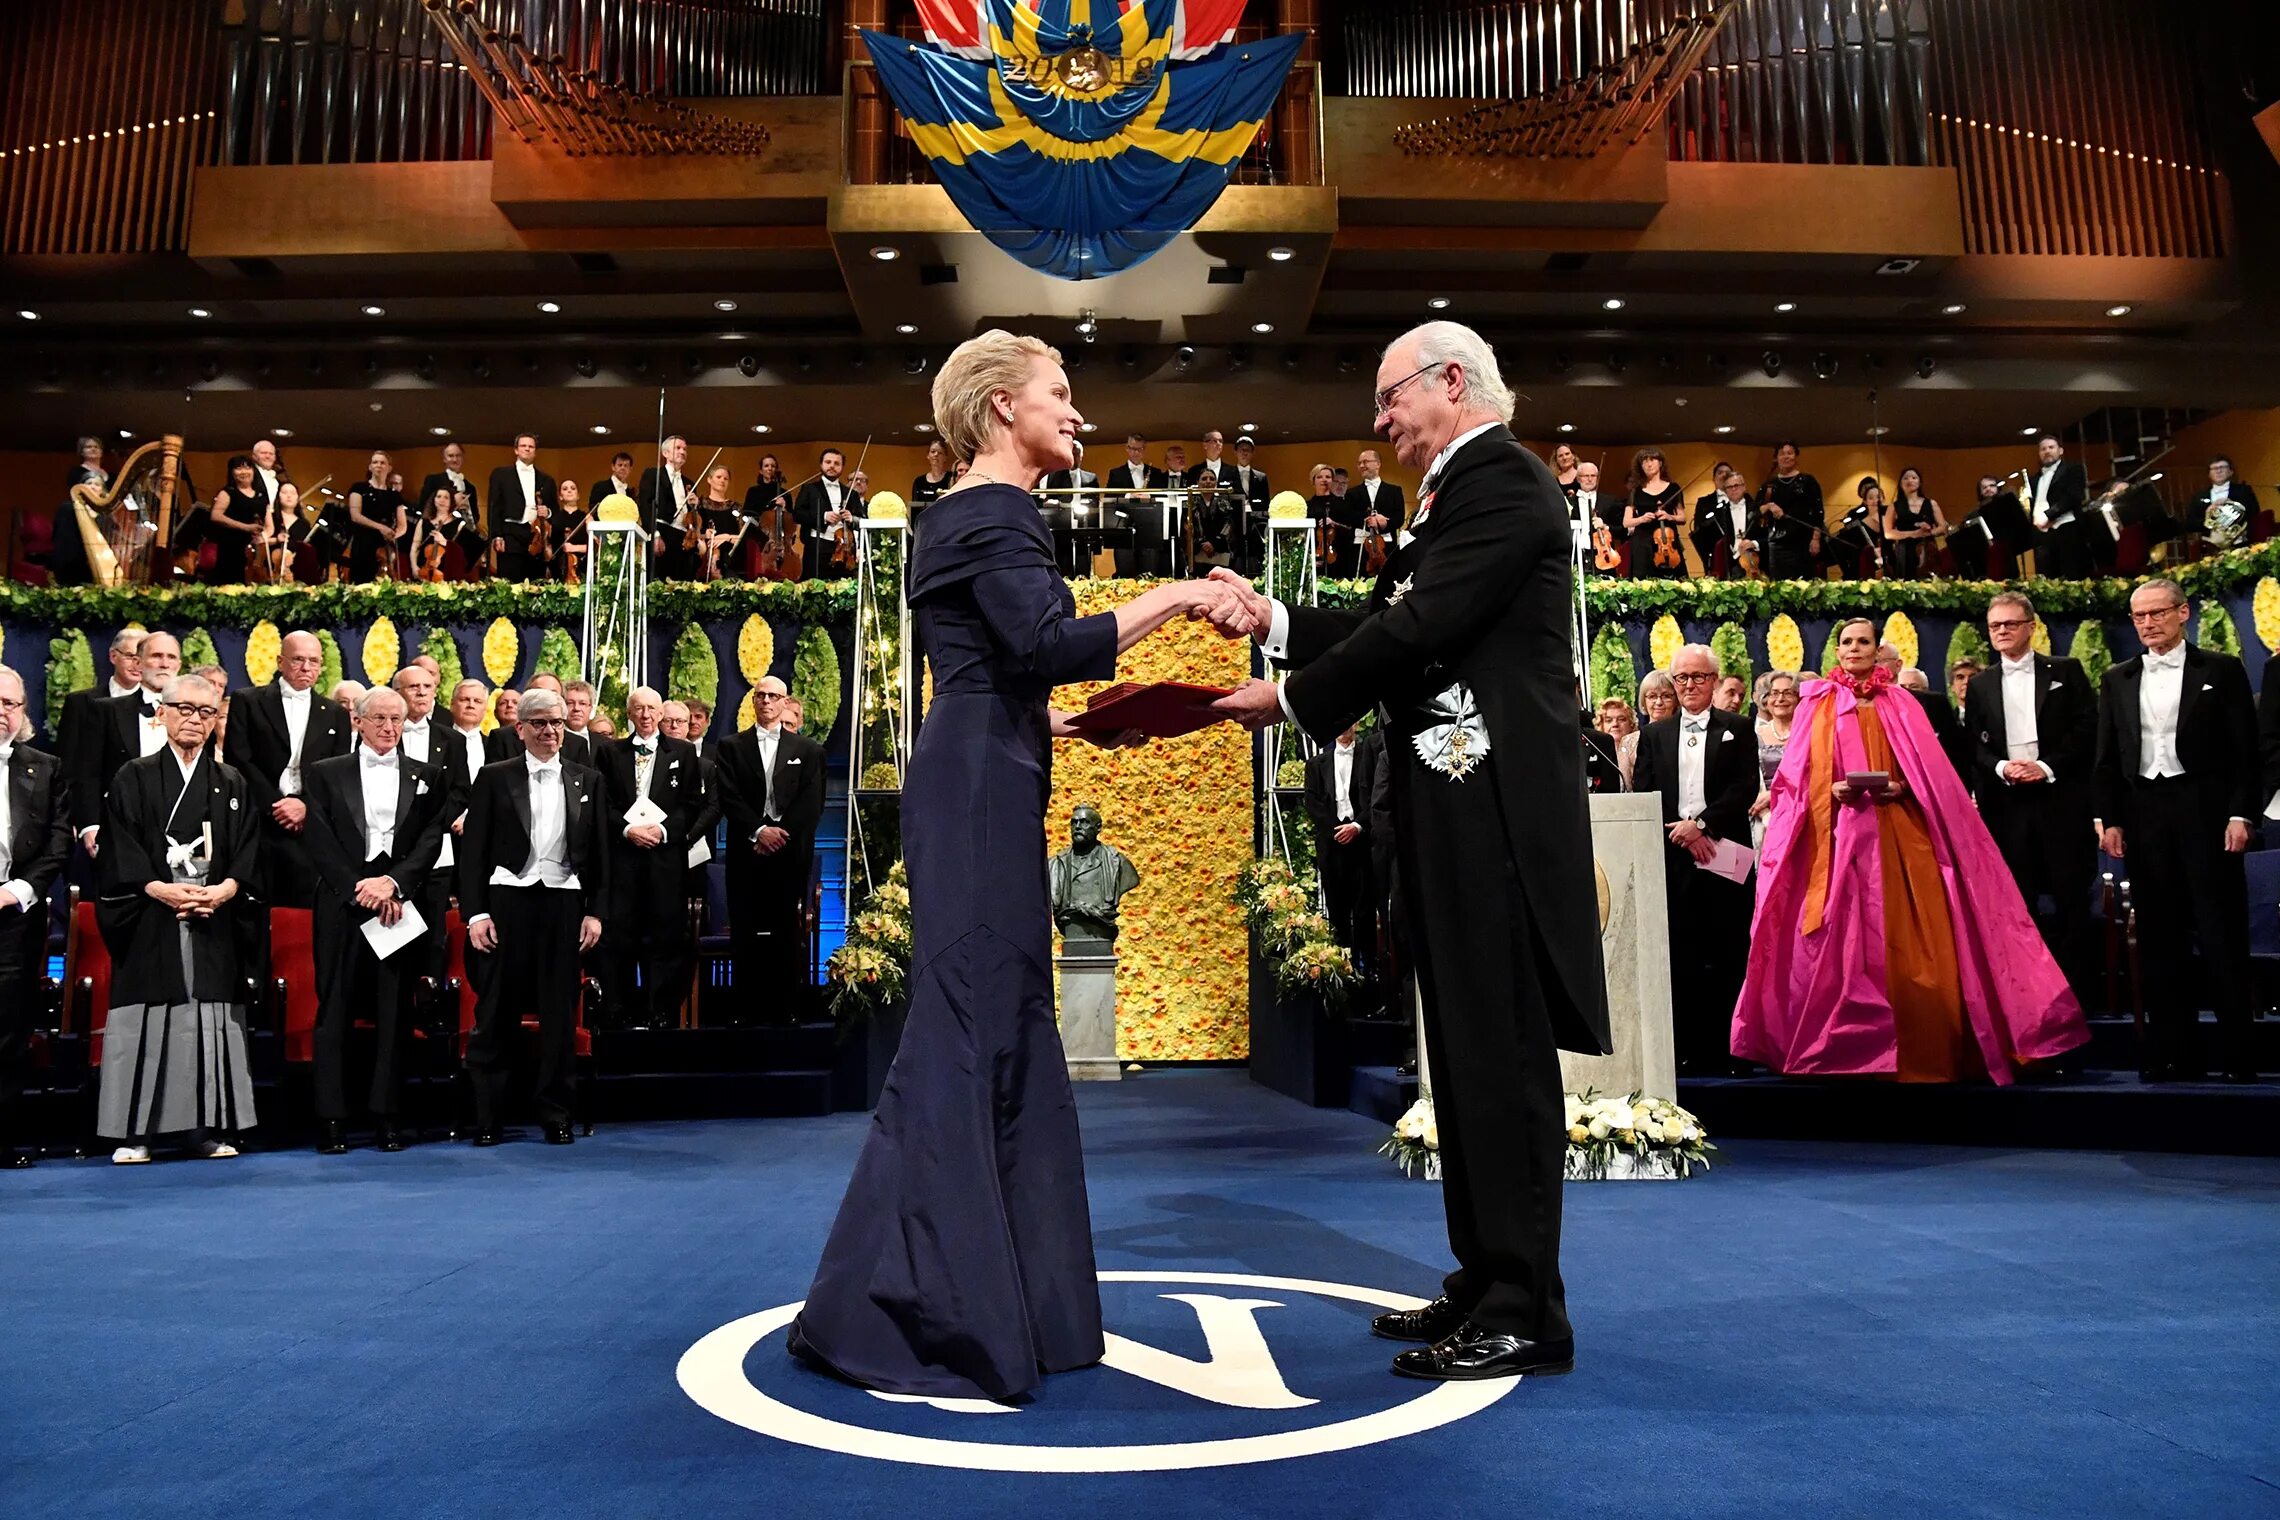 Нобелевская премия в Стокгольме. Церемония вручения Нобелевской премии в Стокгольме. Шведский Король Нобелевская премия.